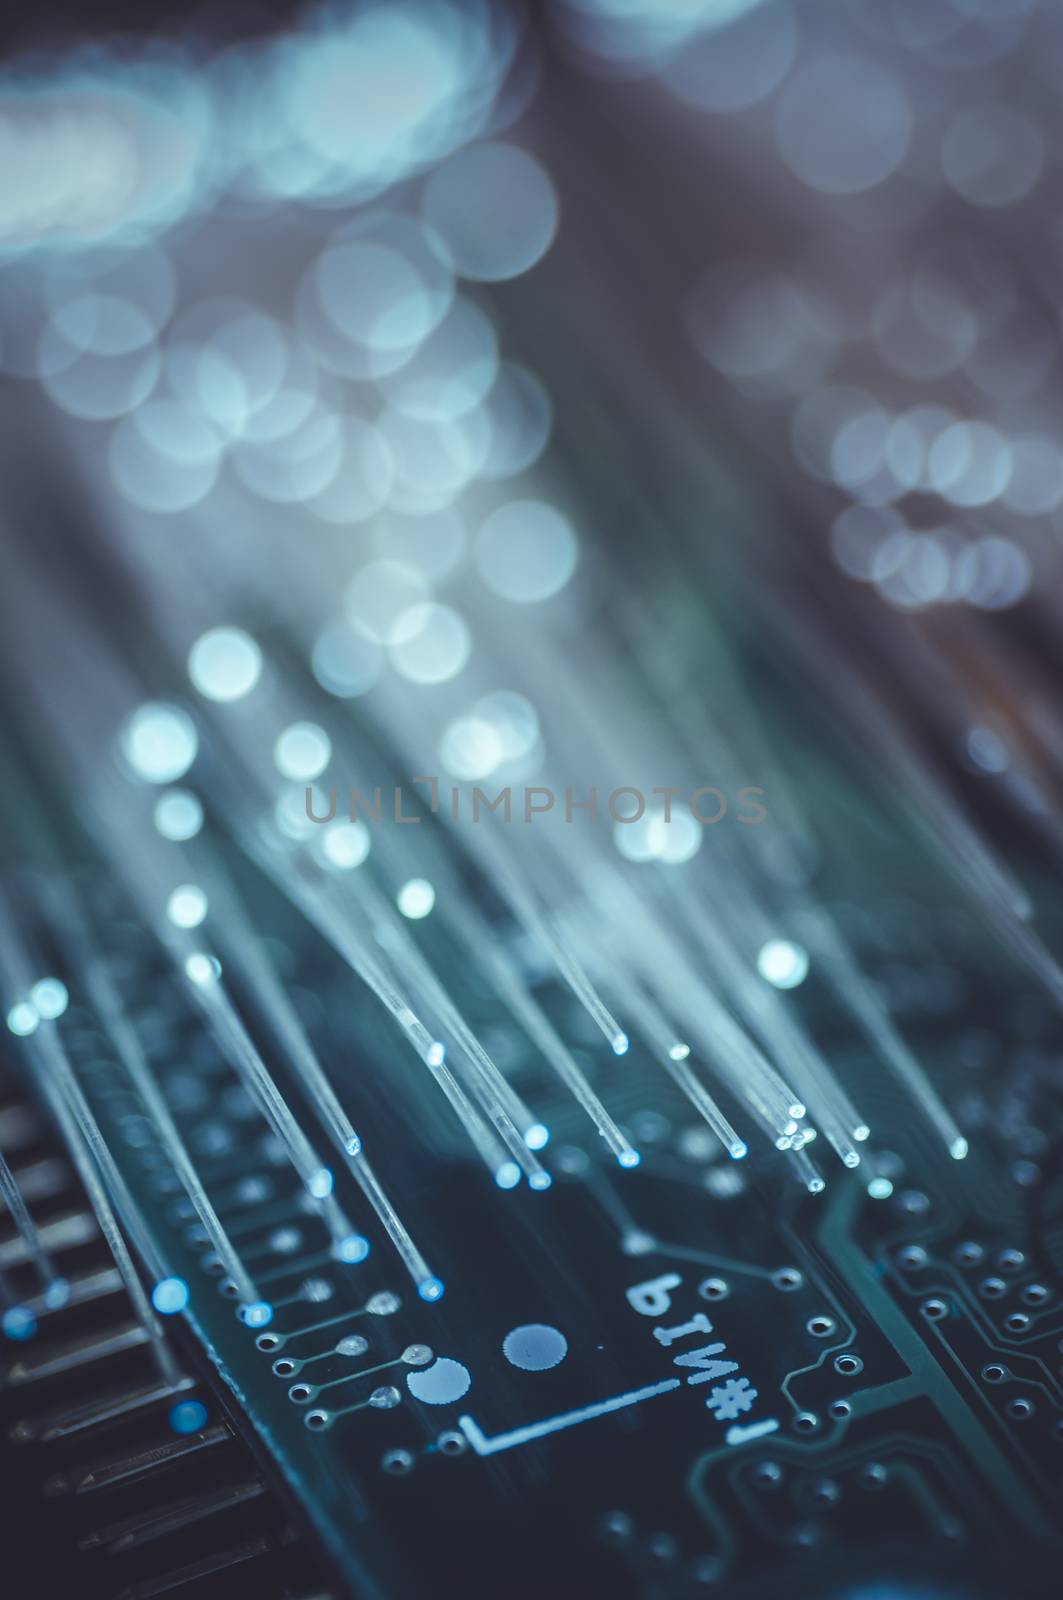 network information, motherboard chip Fiber optic lights